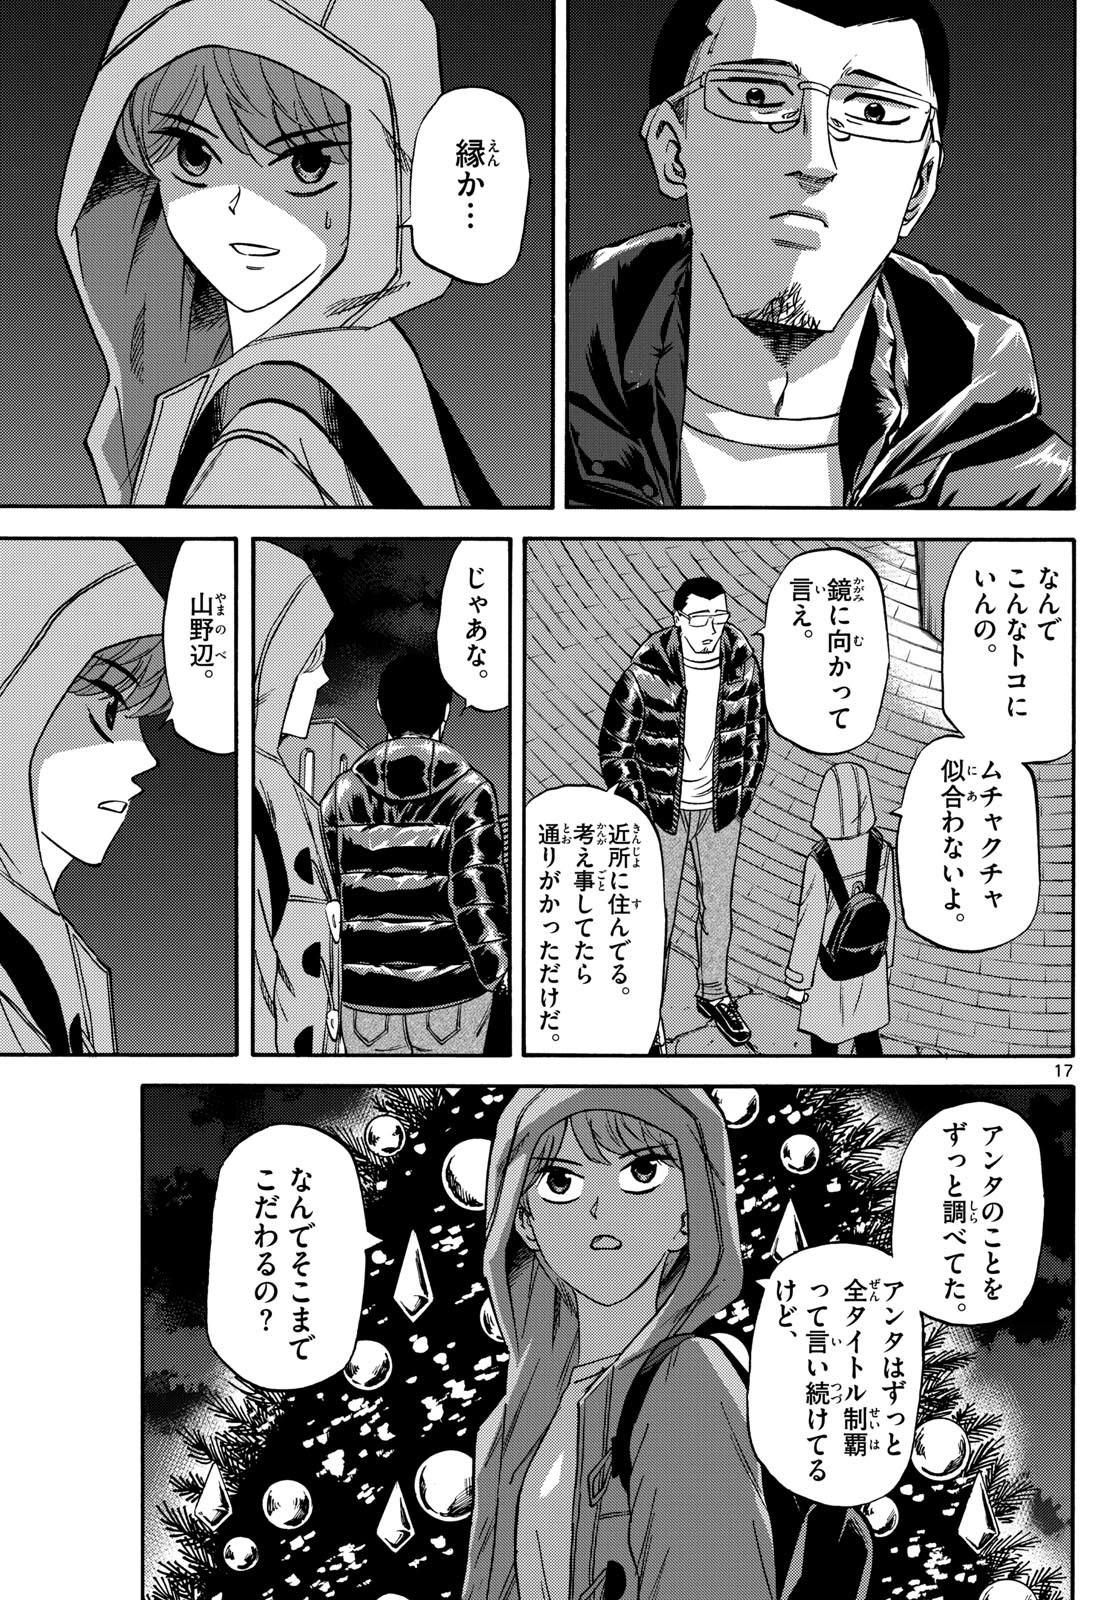 Ryu-to-Ichigo - Chapter 173 - Page 17